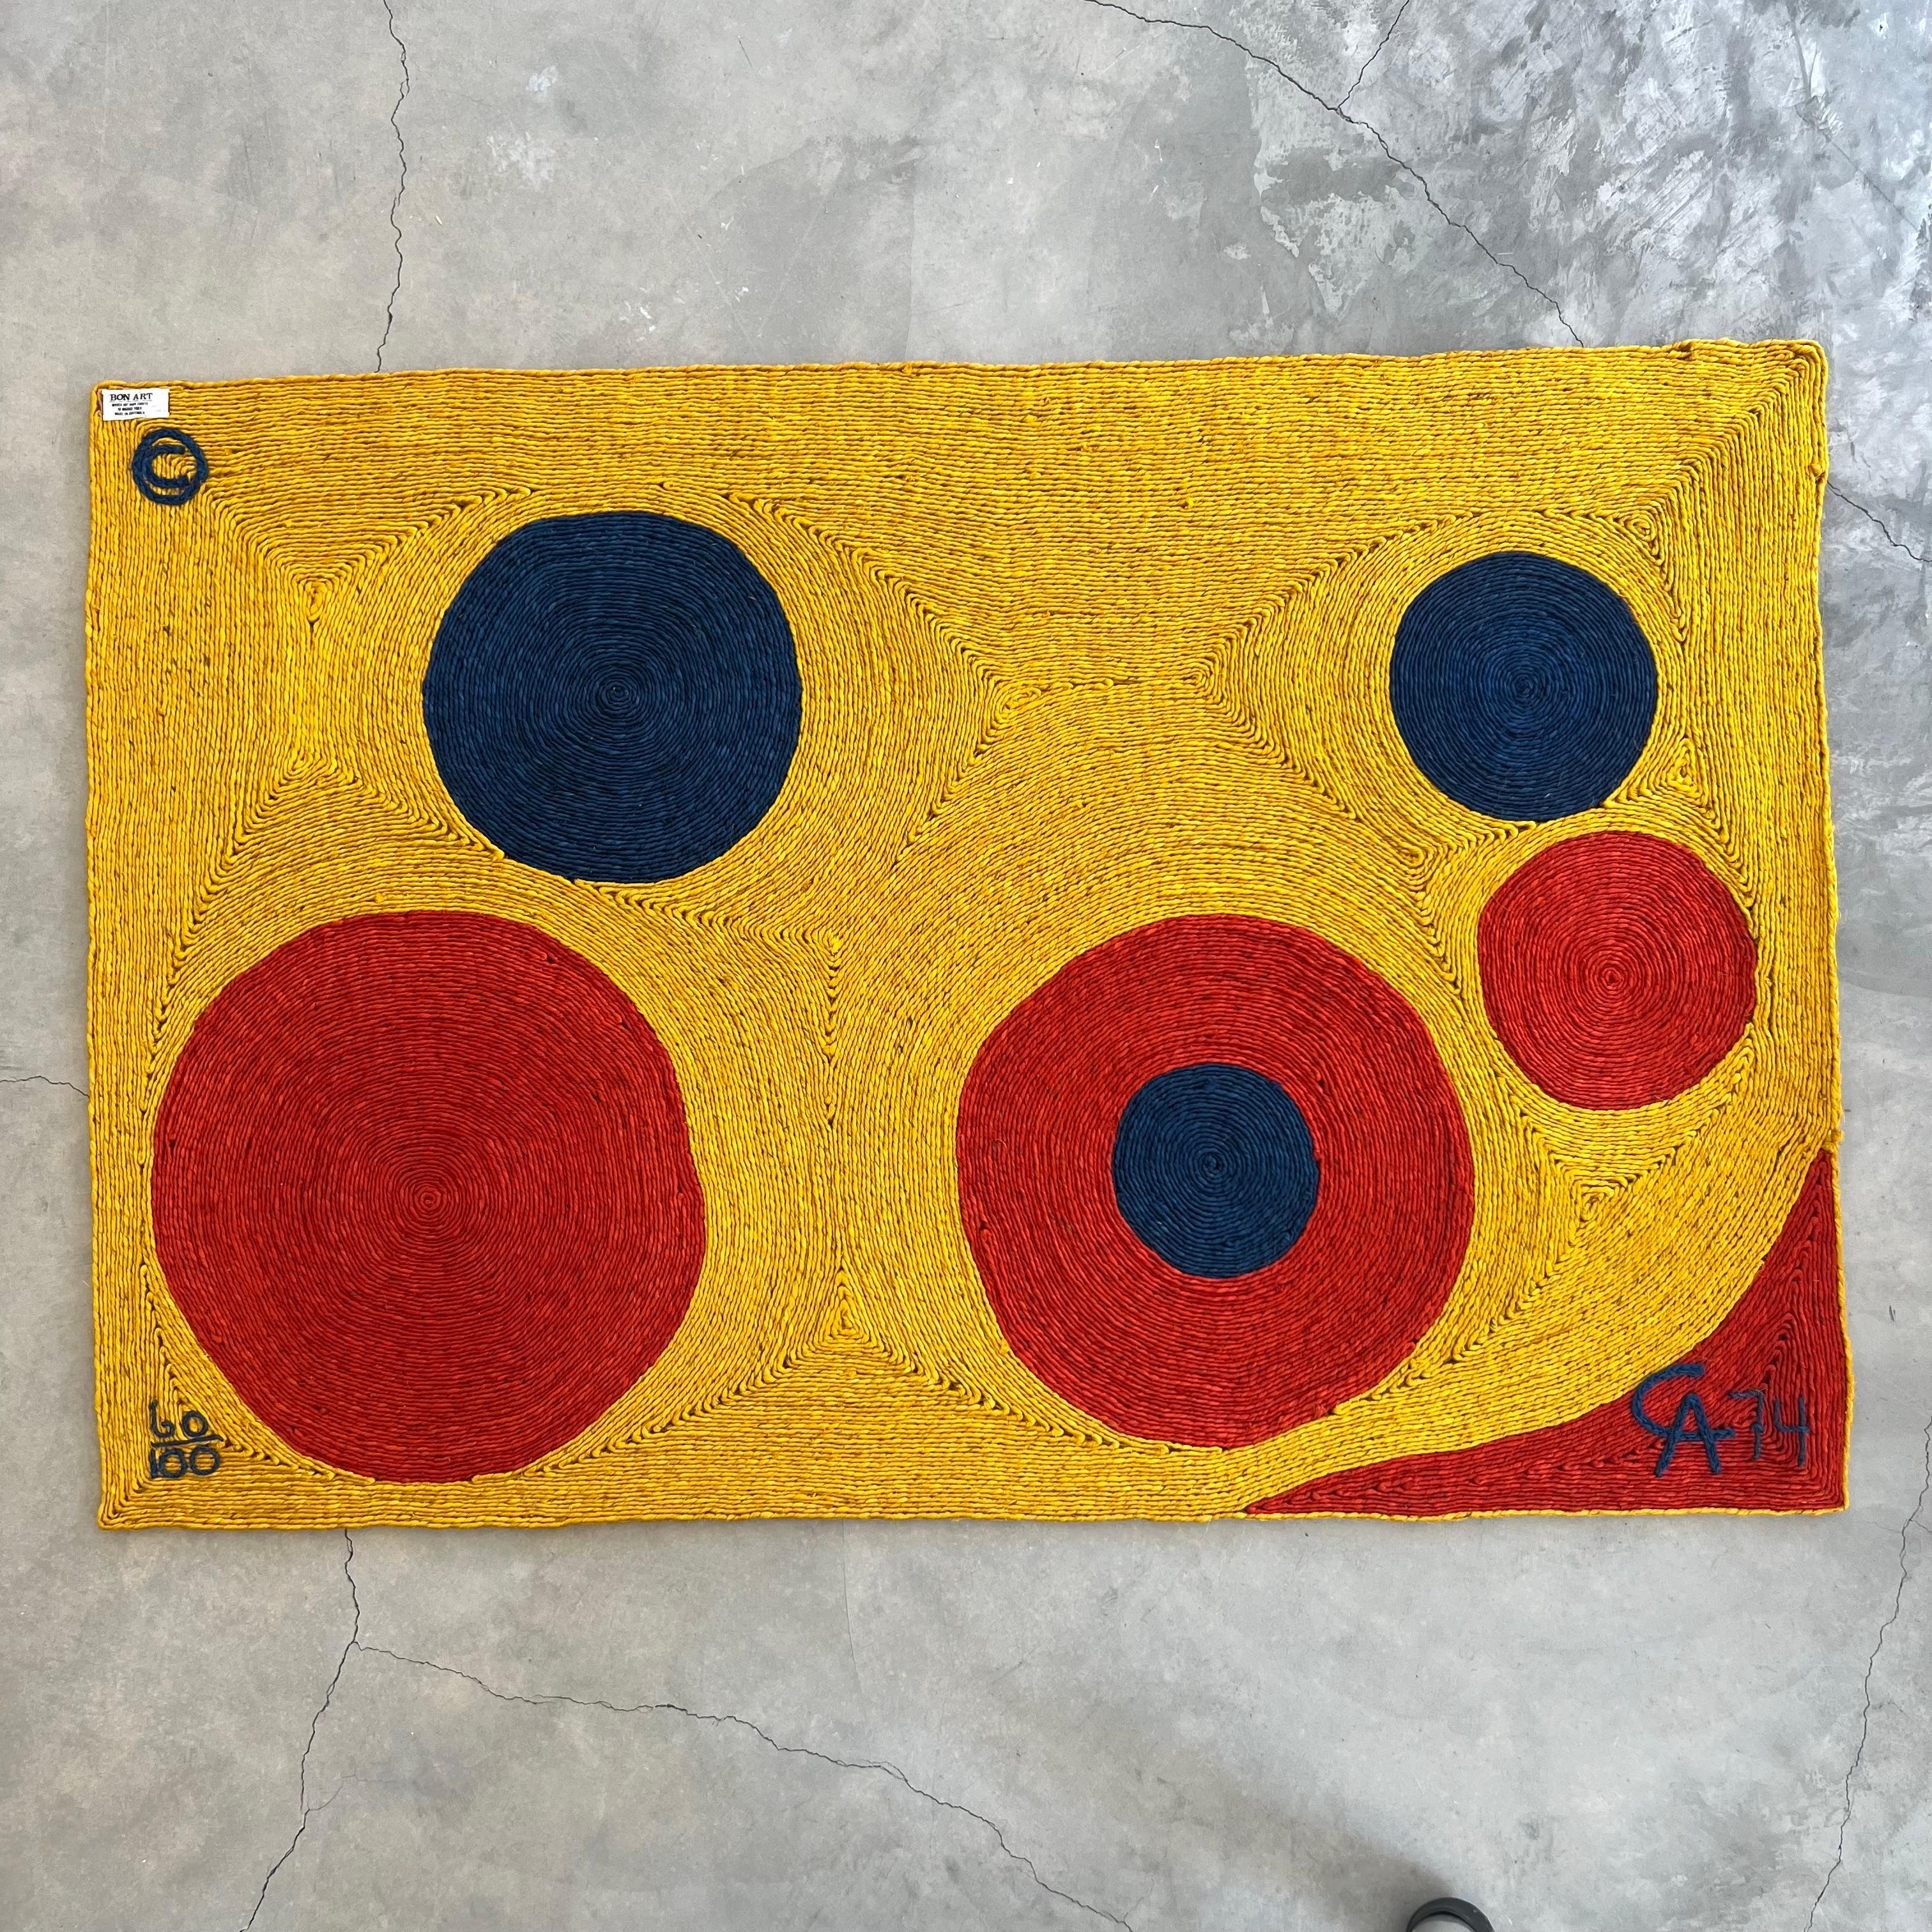 Äußerst seltener Wandteppich aus Jute von Alexander Calder. Dies ist der Wandteppich mit dem Design 